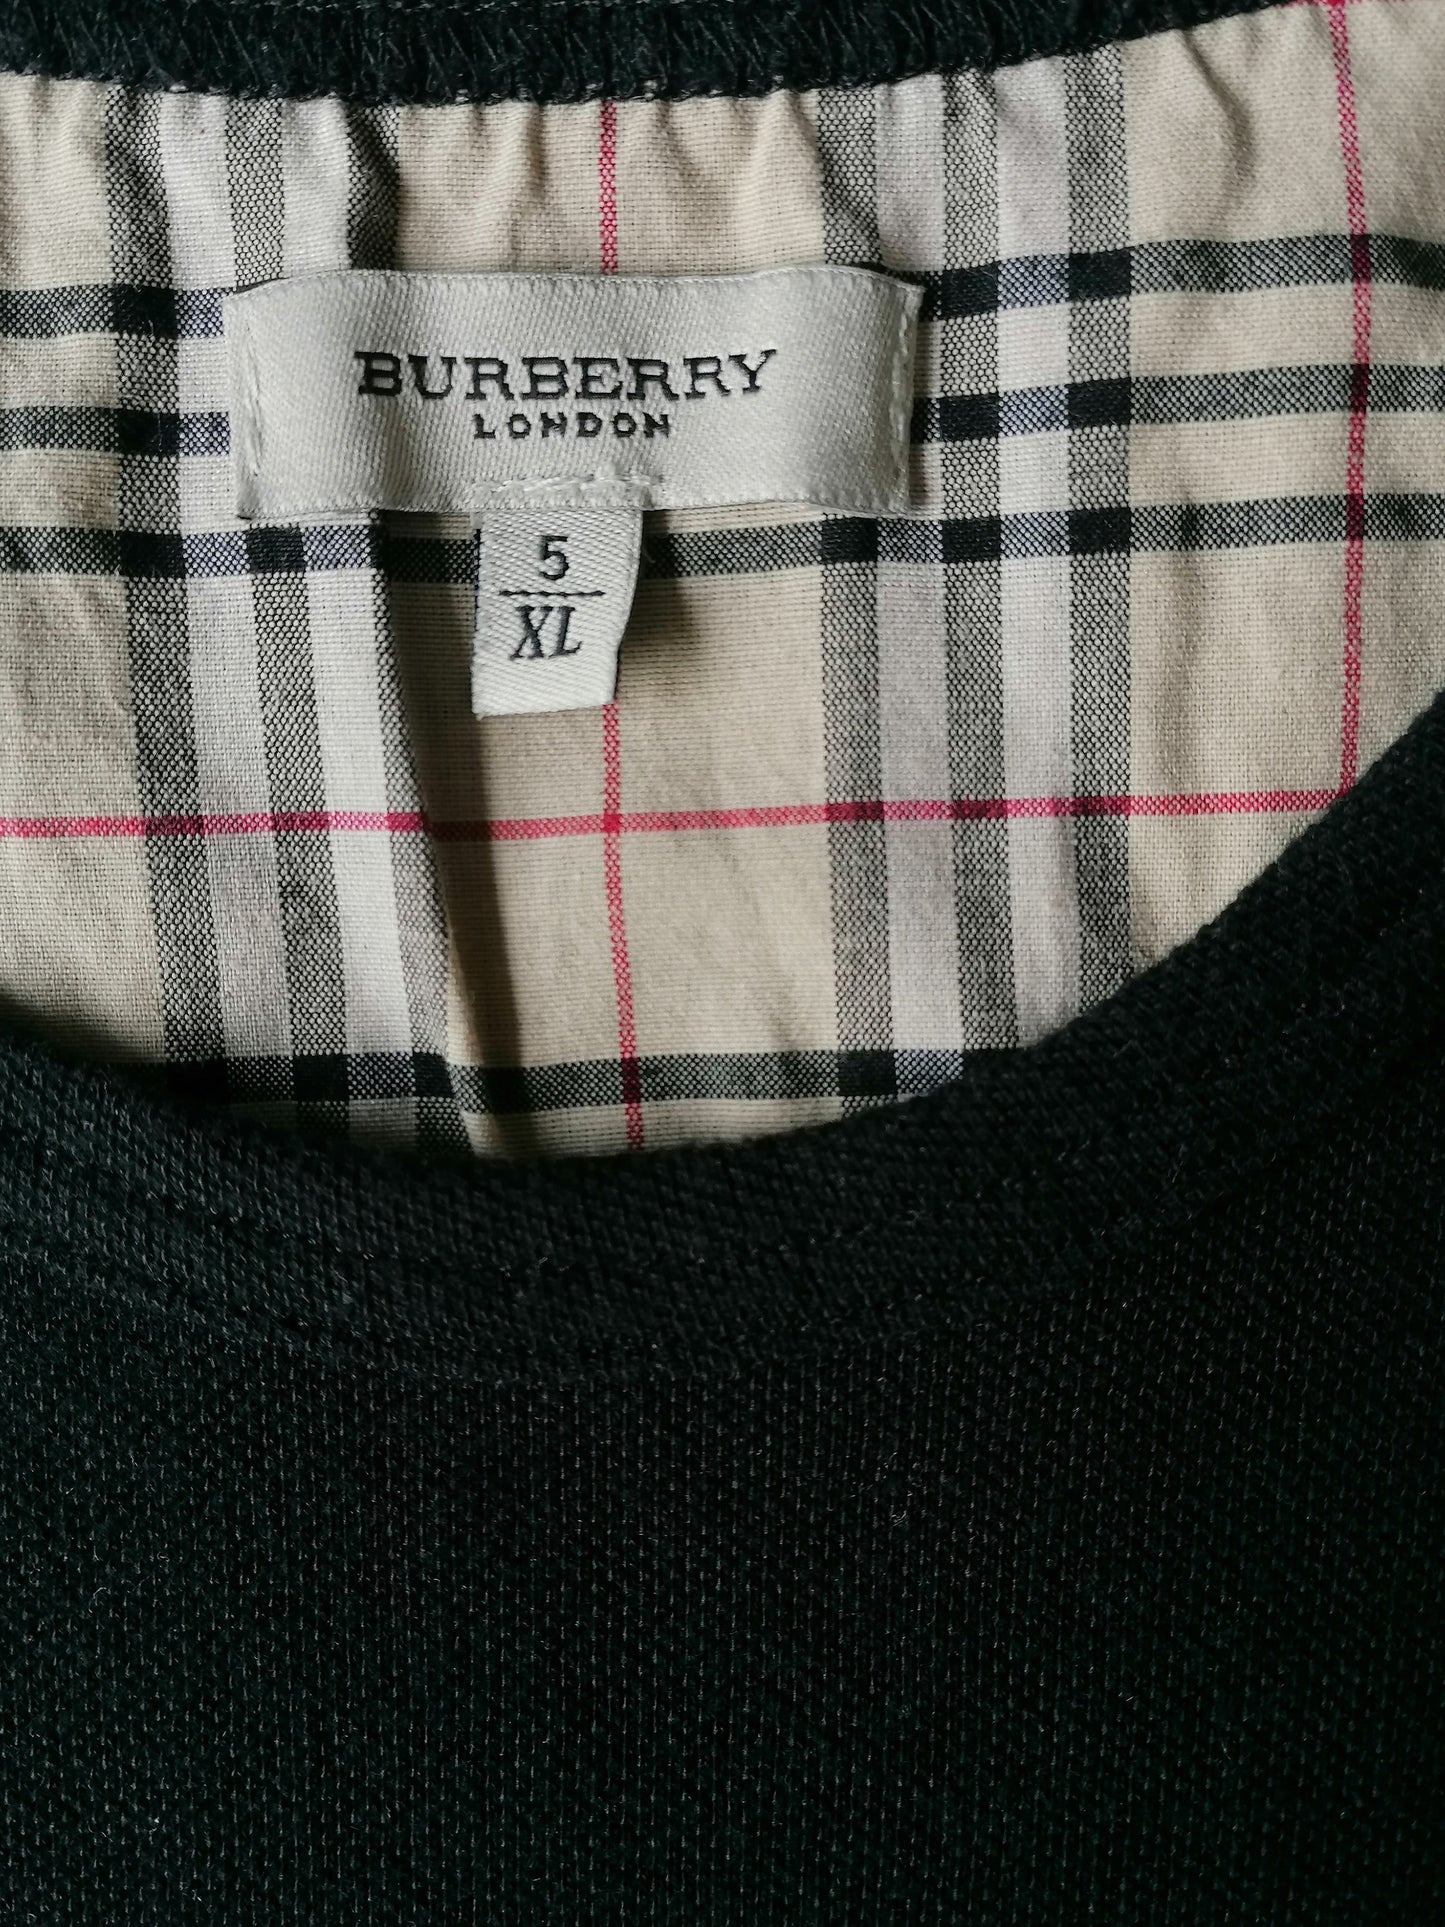 Vintage Burberry Cotton Spencer. Schwarz gefärbt. Größe xl.